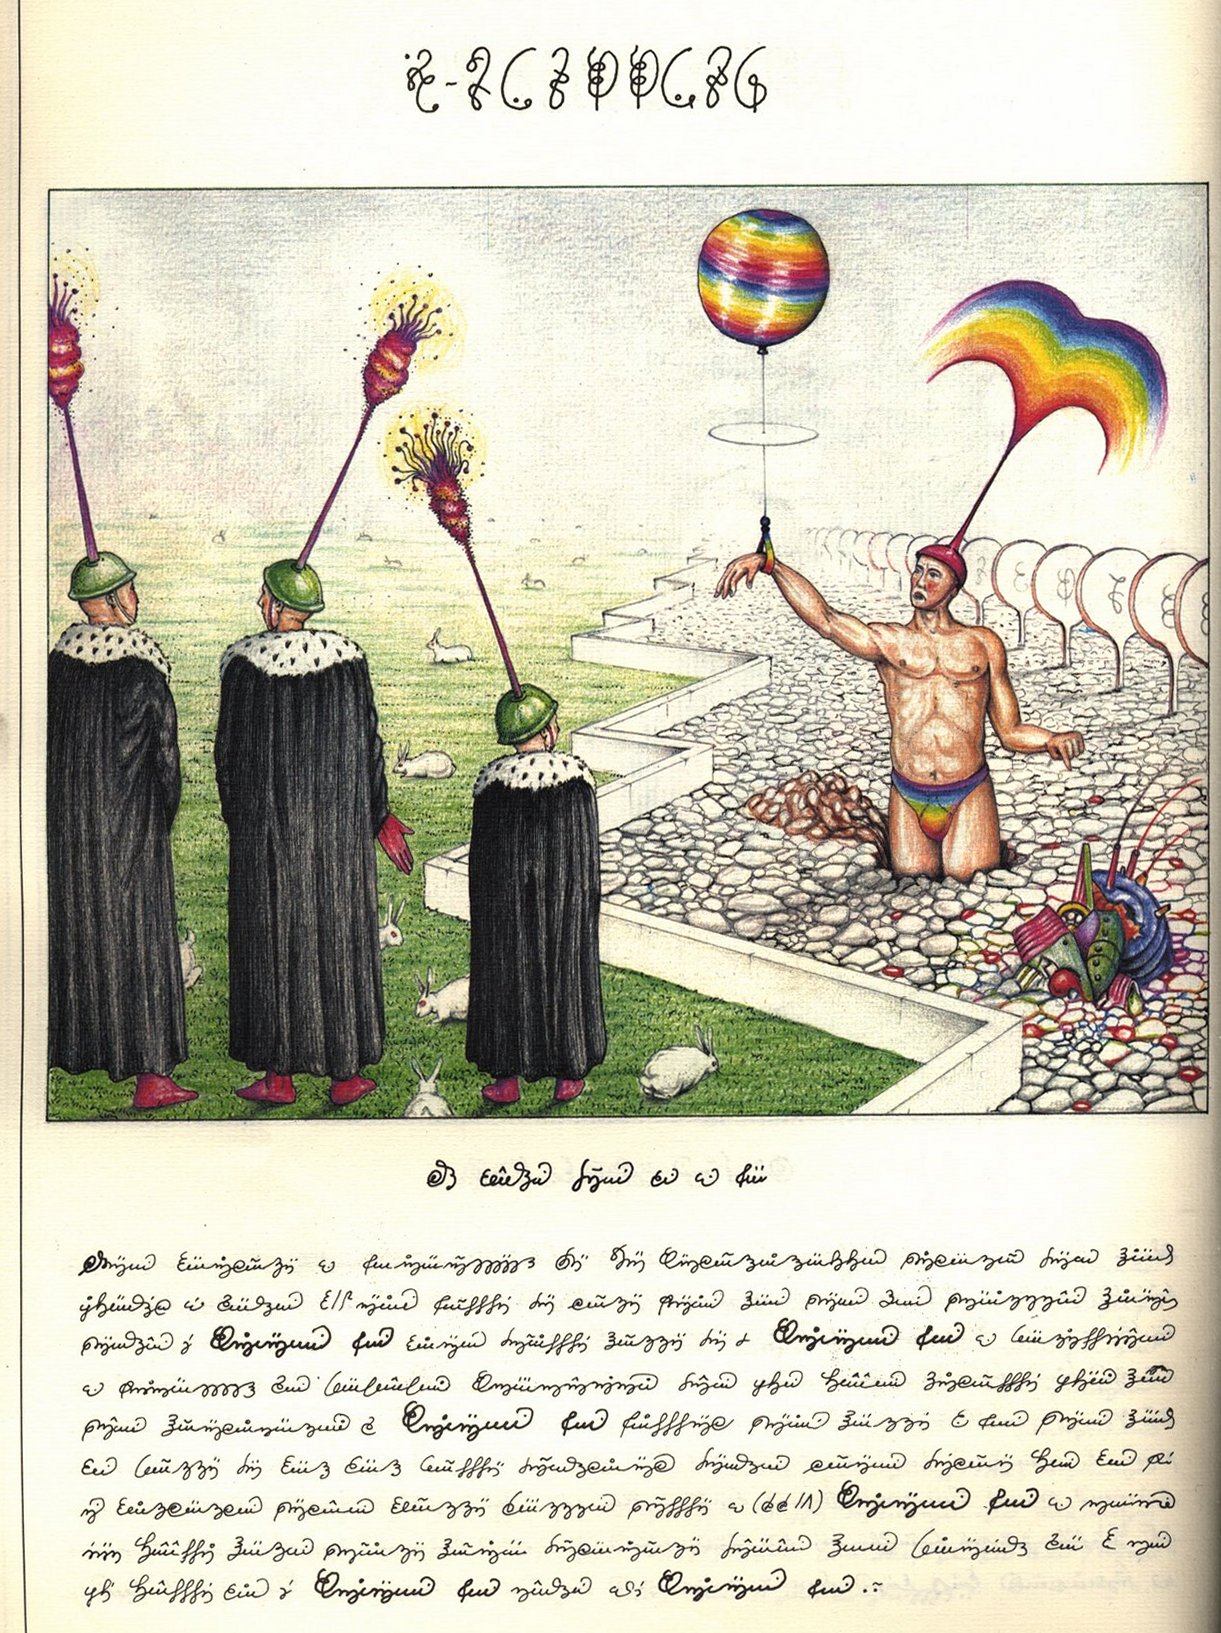 Luigi Serafini. Codex Seraphinianus. — New York : Abbeville Press, 1983